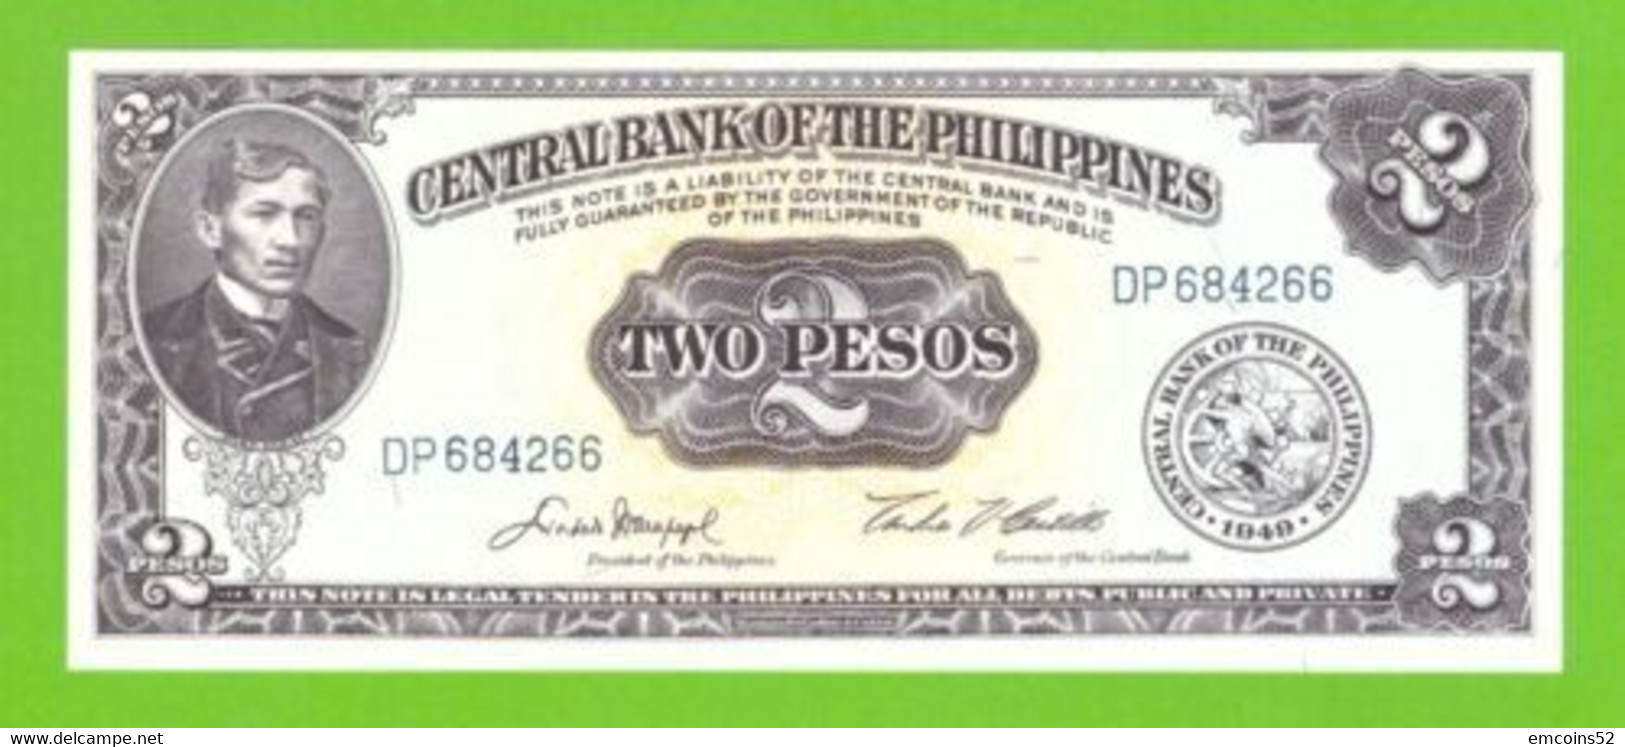 PHILIPPINES 2 PESOS 1949/1969  P-134d UNC - Philippines